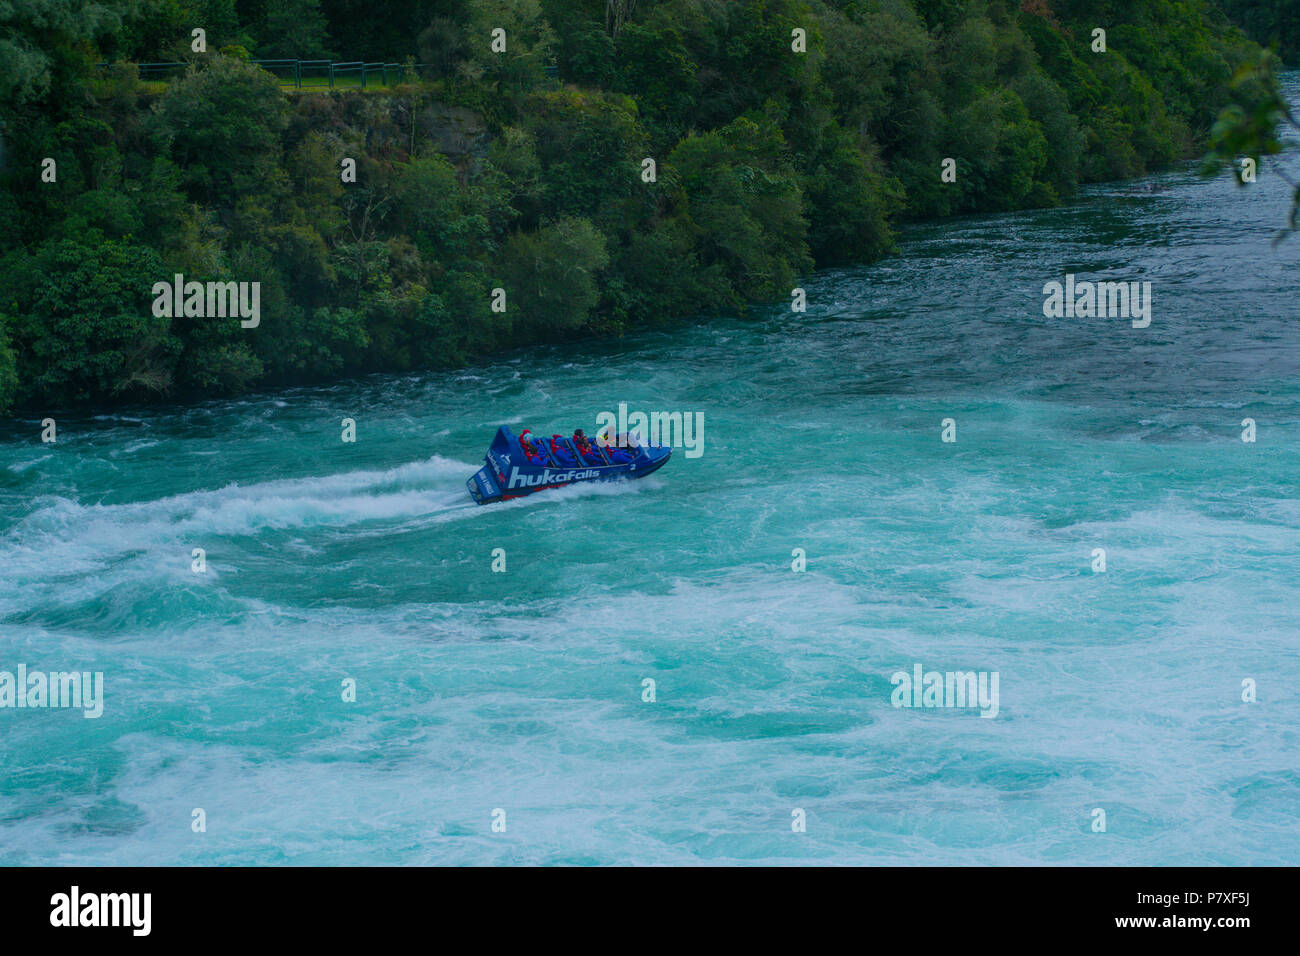 Cascate Huka Jet crociera in barca attraverso il fiume rapids con alberi e linea di bush in background in Taupo, Nuova Zelanda Foto Stock